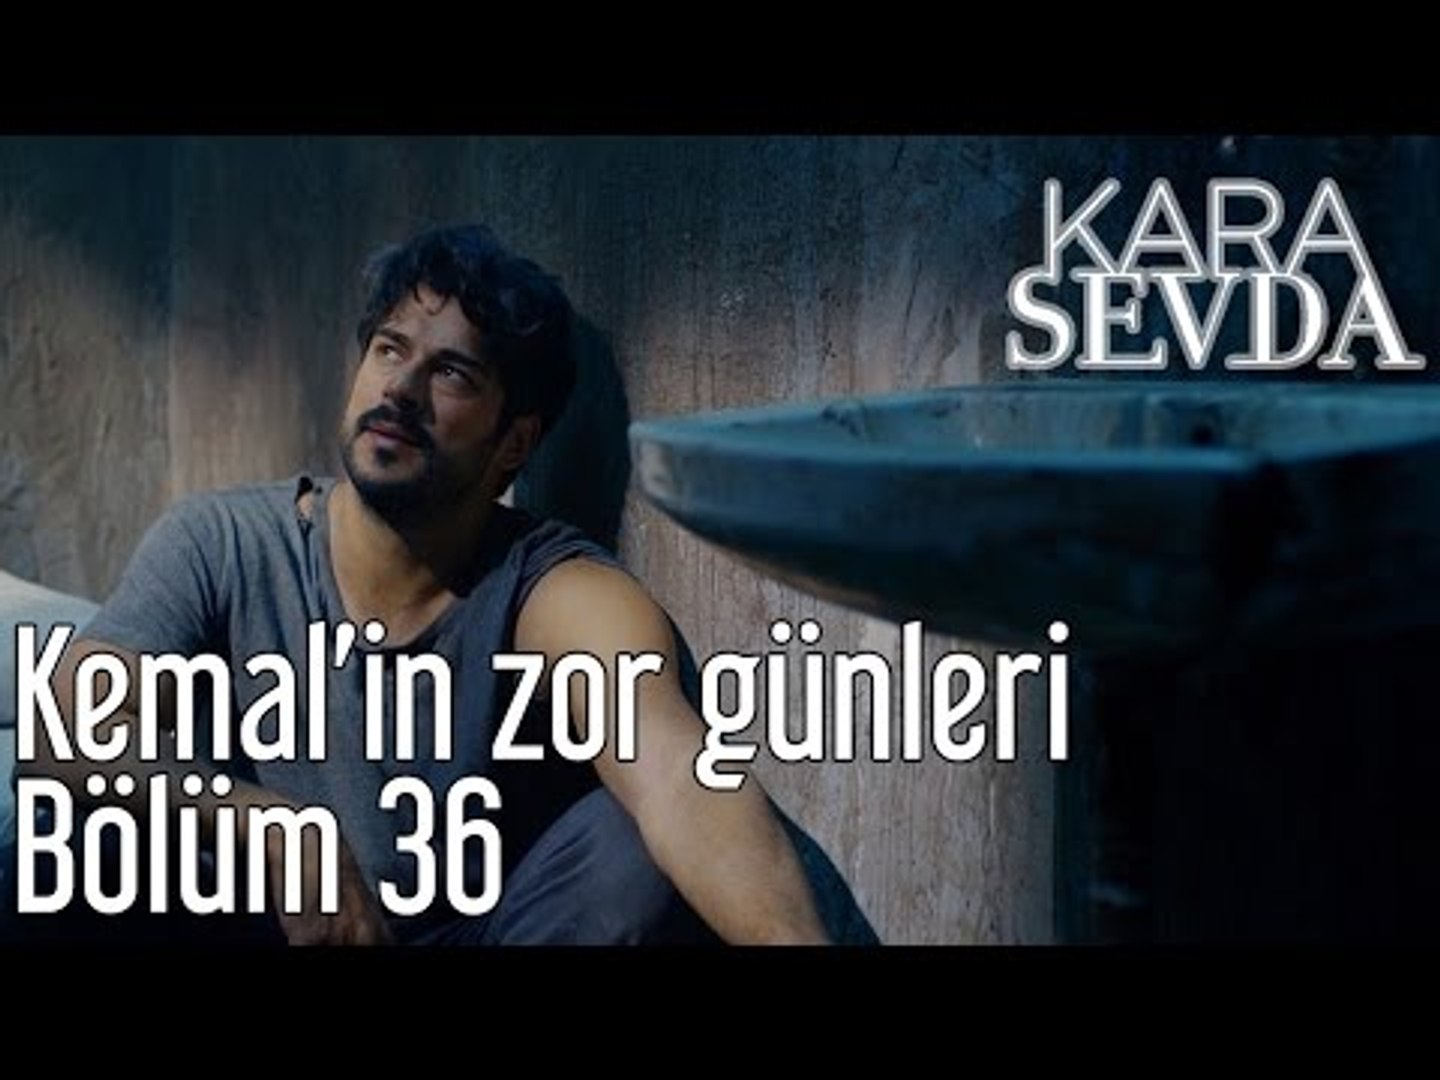 Kara Sevda 36. Bölüm - Kemal'in Zor Günleri - Dailymotion Video